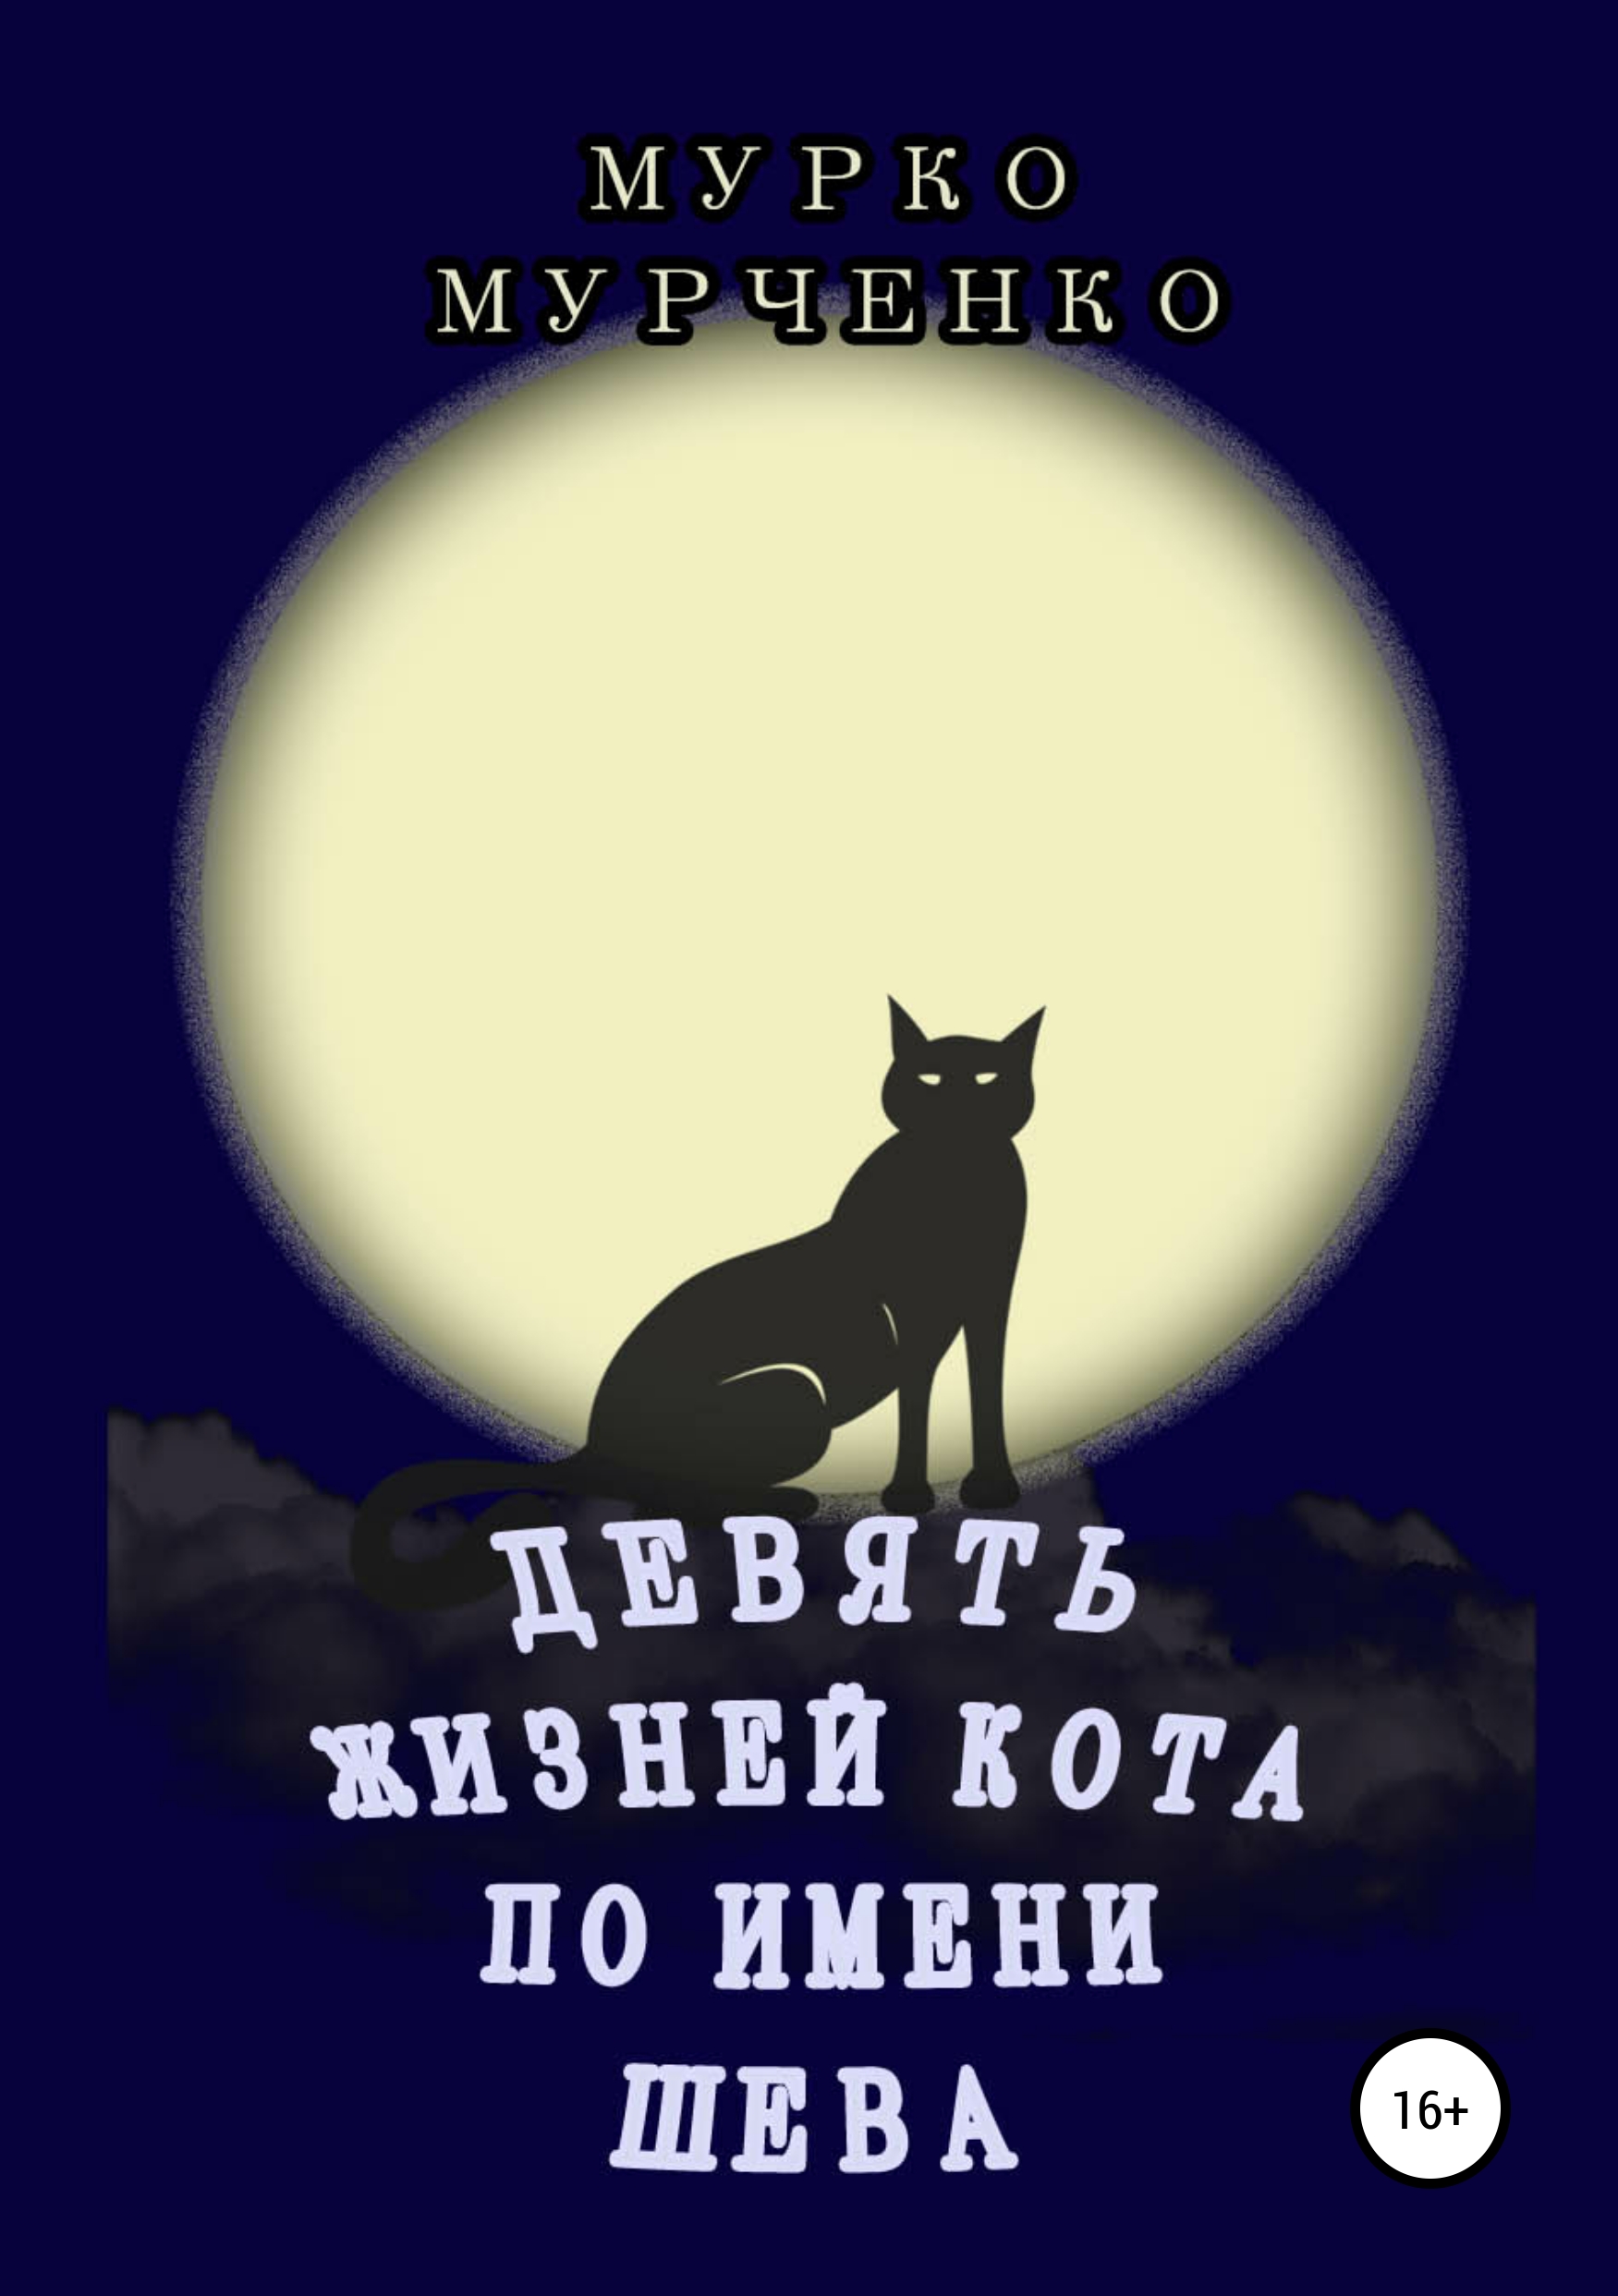 Книга Девять жизней кота по имени Шева из серии , созданная Мурко Мурченко, может относится к жанру Домашние Животные, Биографии и Мемуары. Стоимость электронной книги Девять жизней кота по имени Шева с идентификатором 42160343 составляет 0 руб.